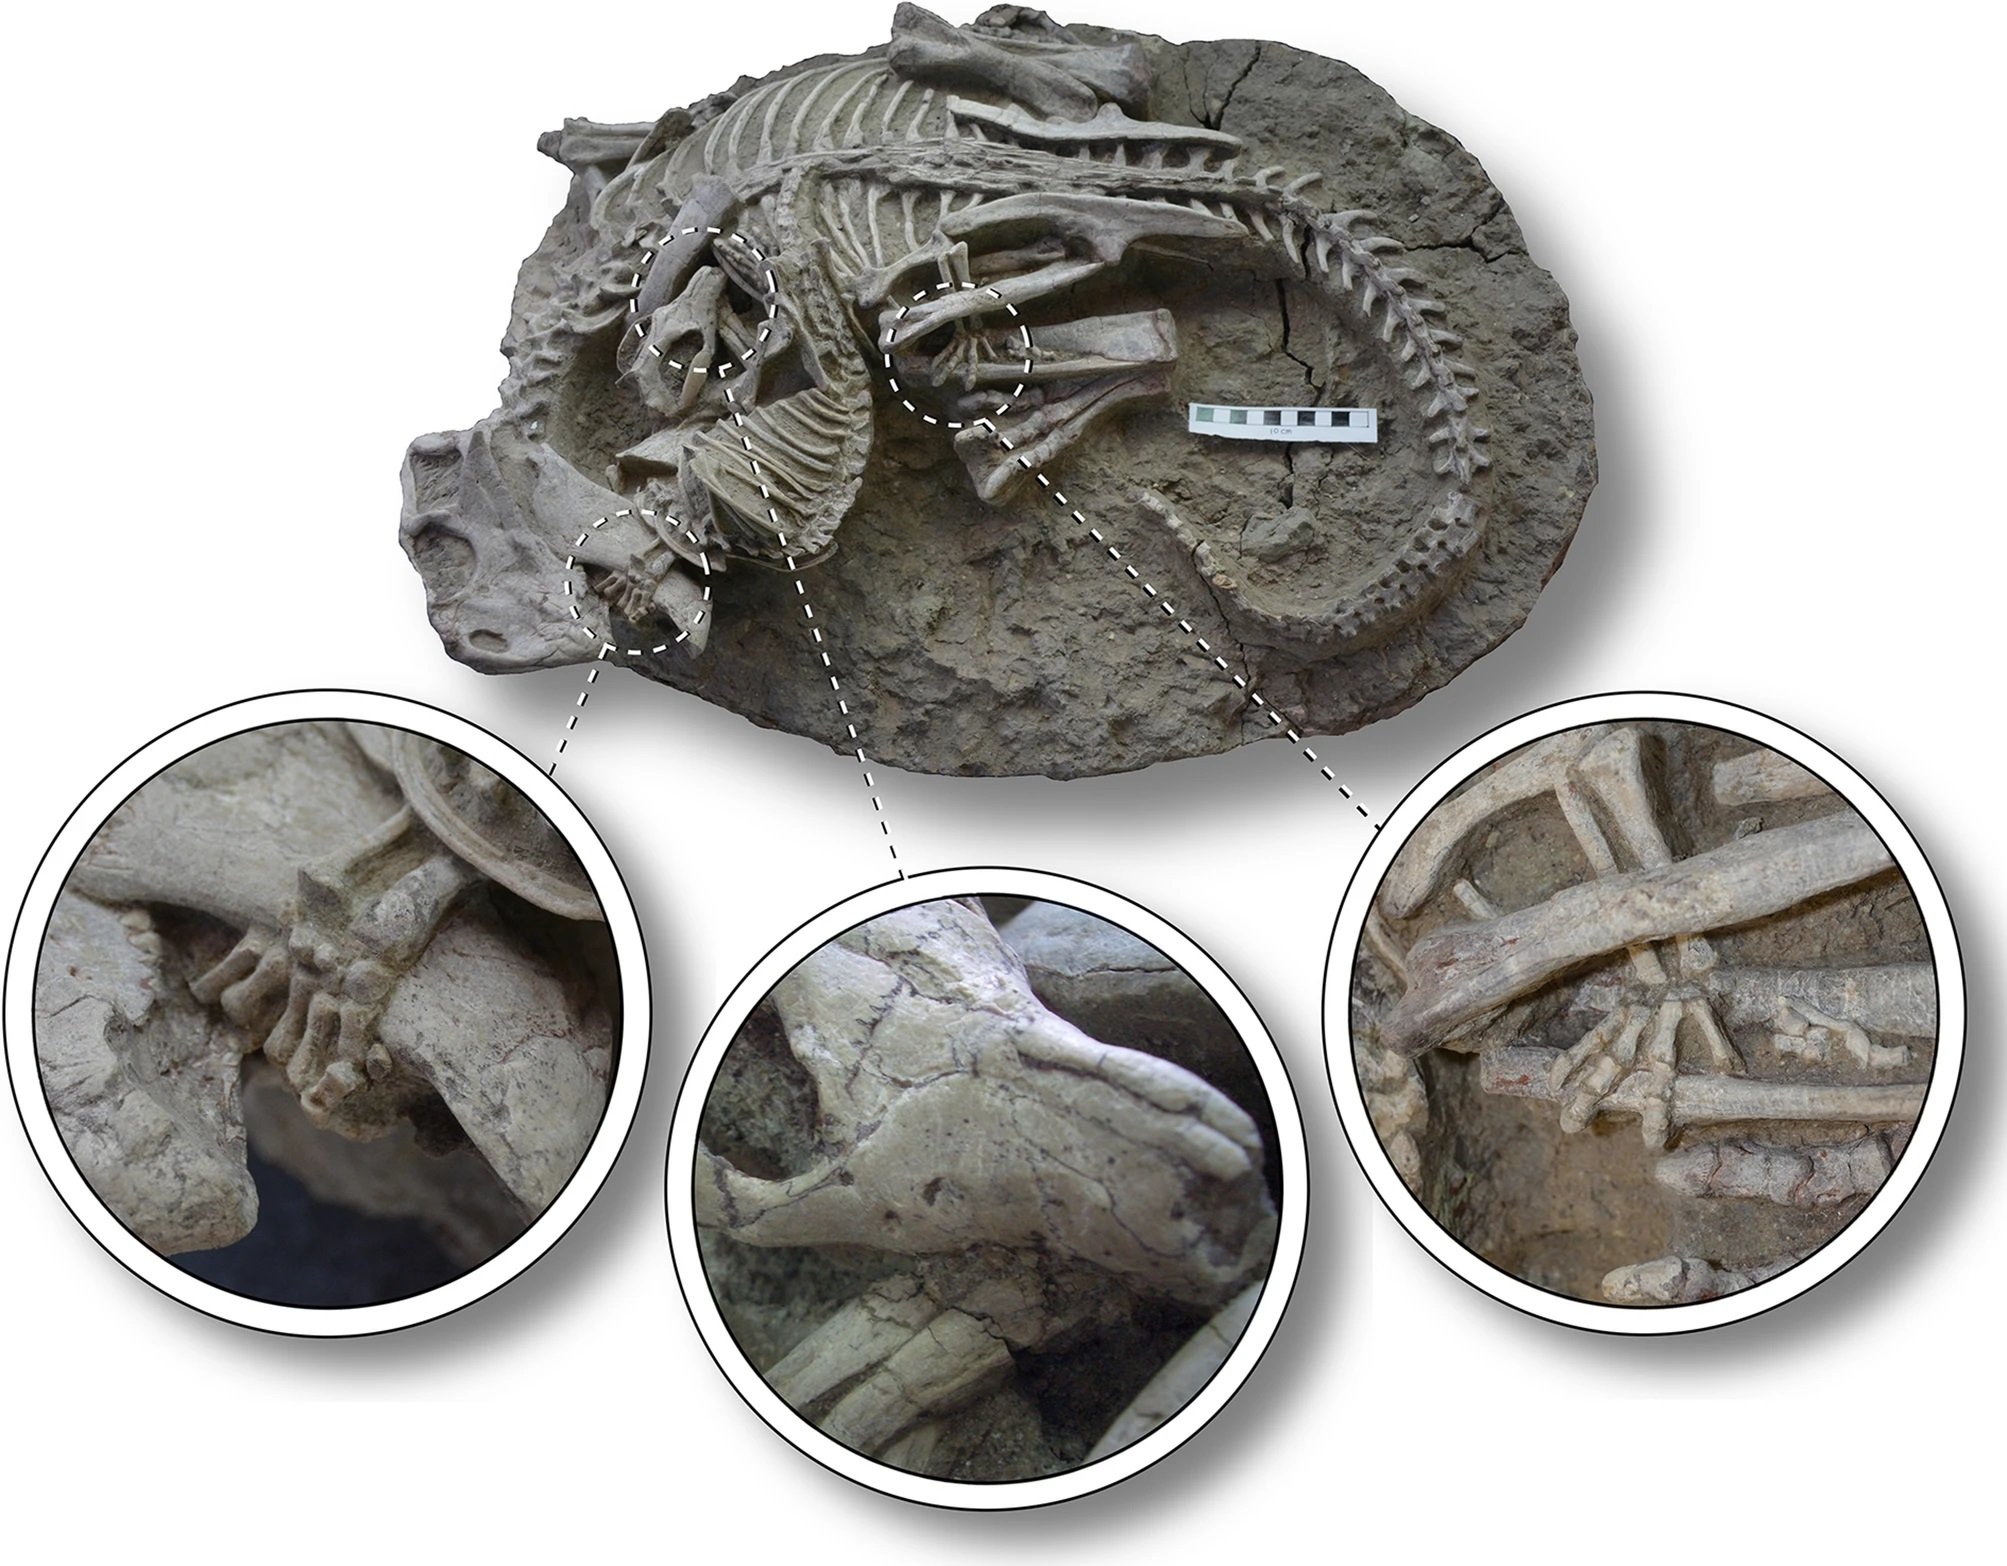 Detalhes do fóssil de 125 milhões de anos mostram que as patas dos animais estavam entrelaçadas. (Scientific Reports/Reprodução)